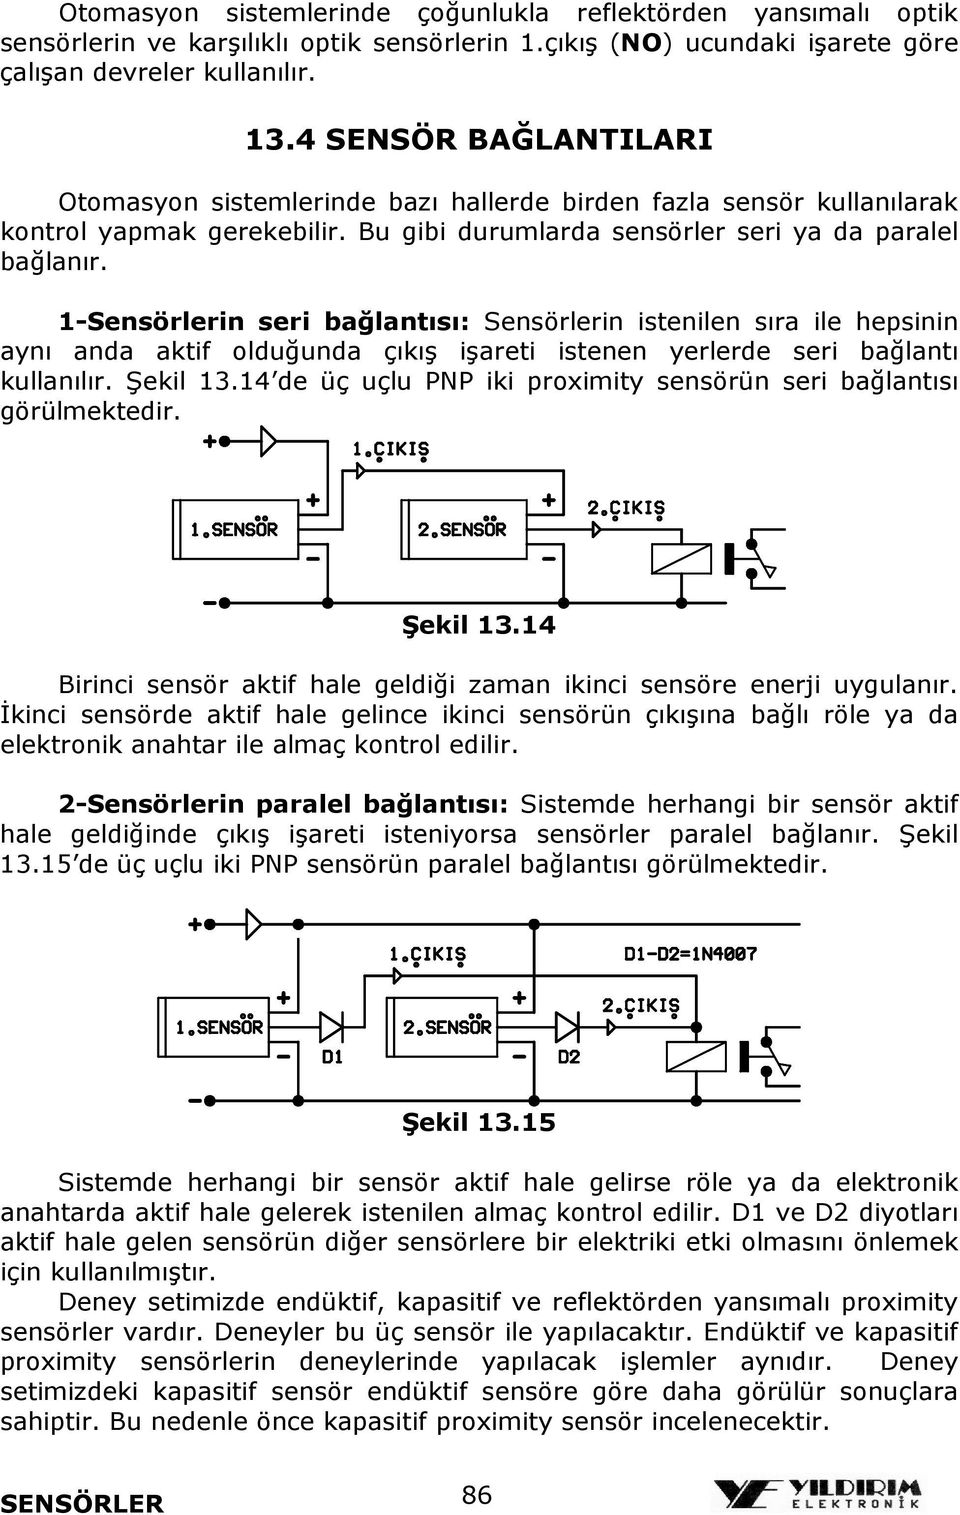 1-Sensörlerin seri bağlantısı: Sensörlerin istenilen sıra ile hepsinin aynı anda aktif olduğunda çıkış işareti istenen yerlerde seri bağlantı kullanılır. Şekil 13.